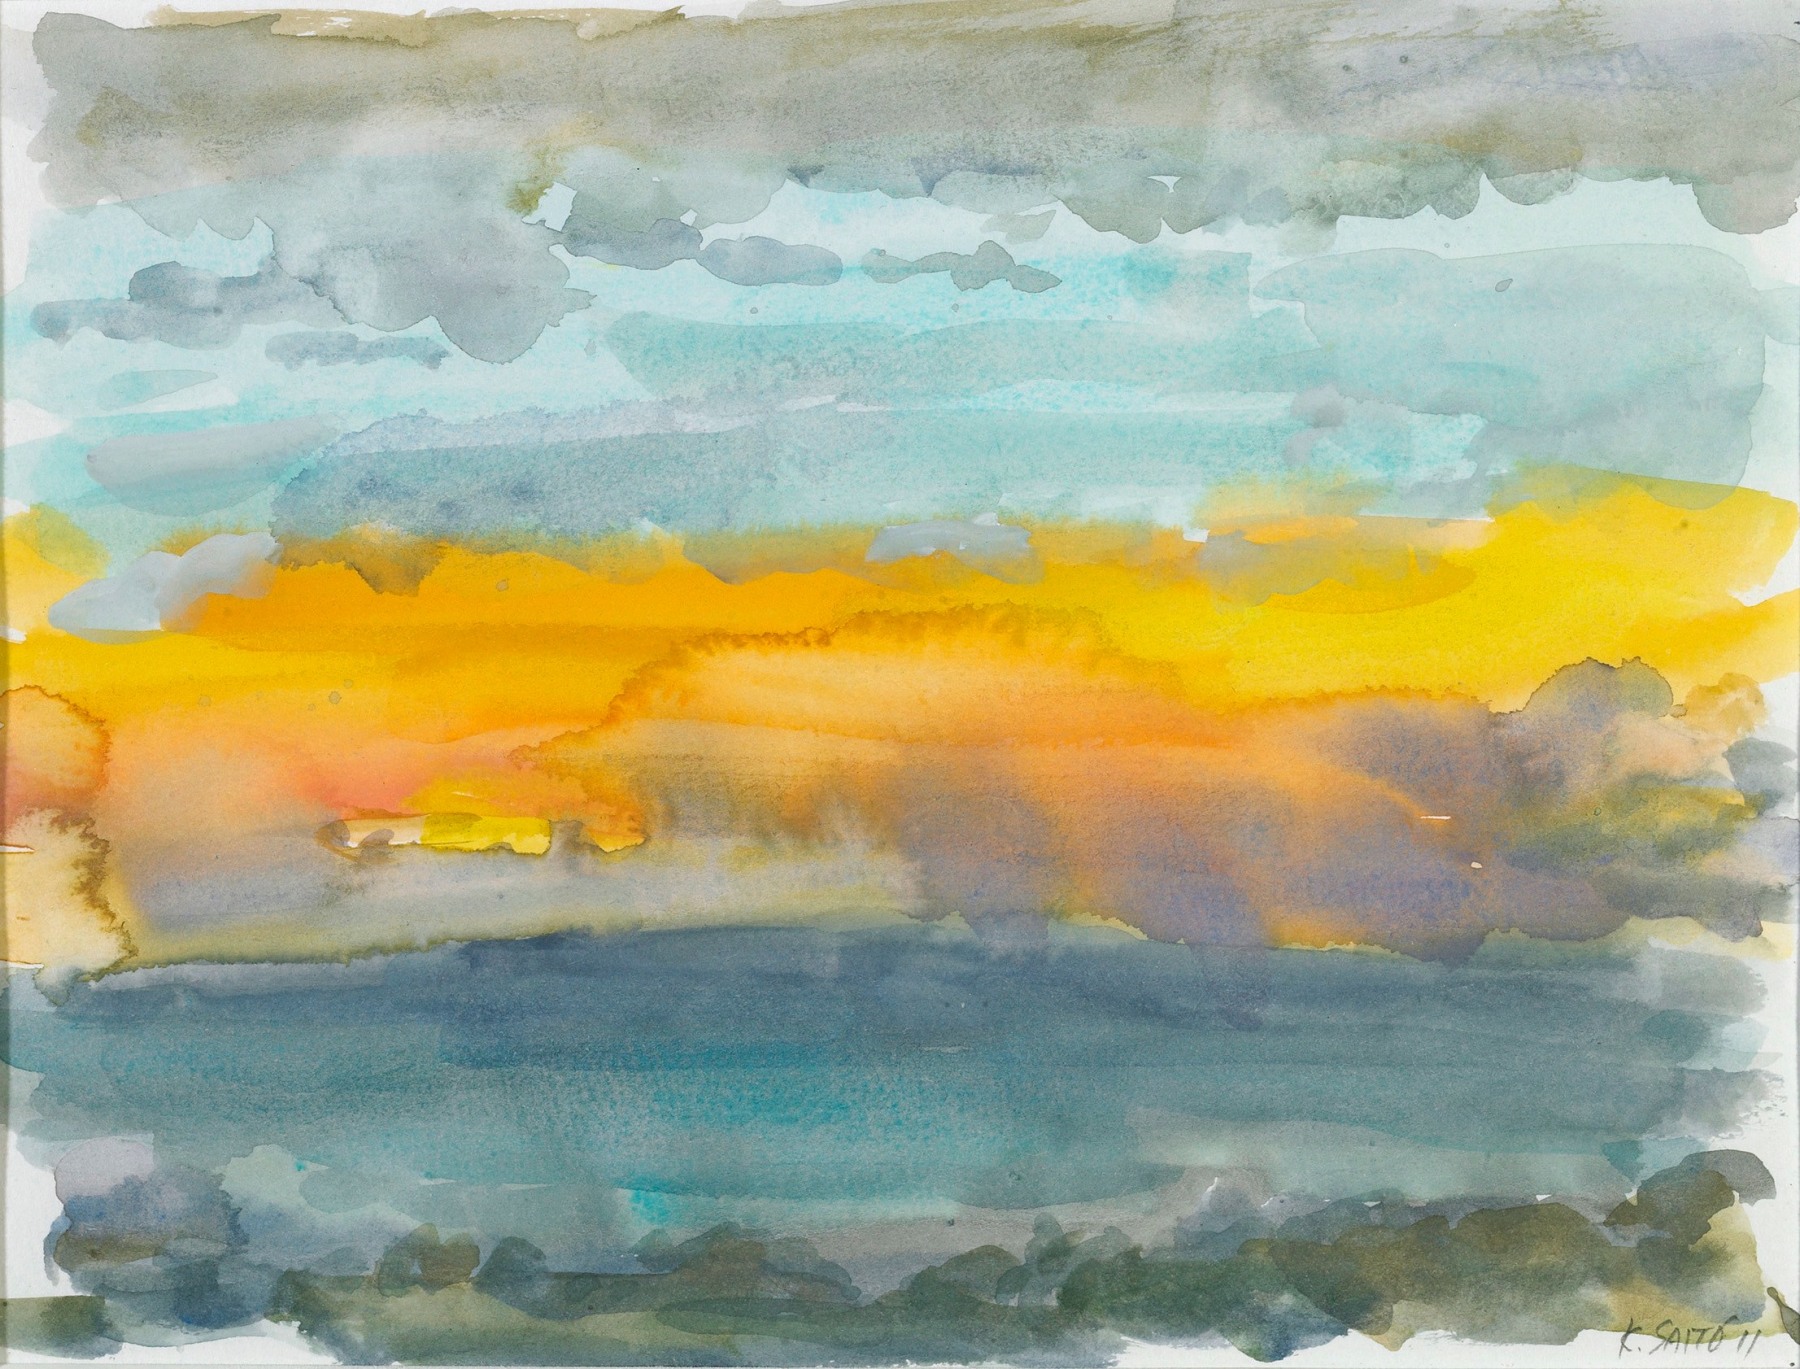 Kikuo Saito, Gotland #59, 2011    Watercolor on paper 6 x 8 3/4 inches